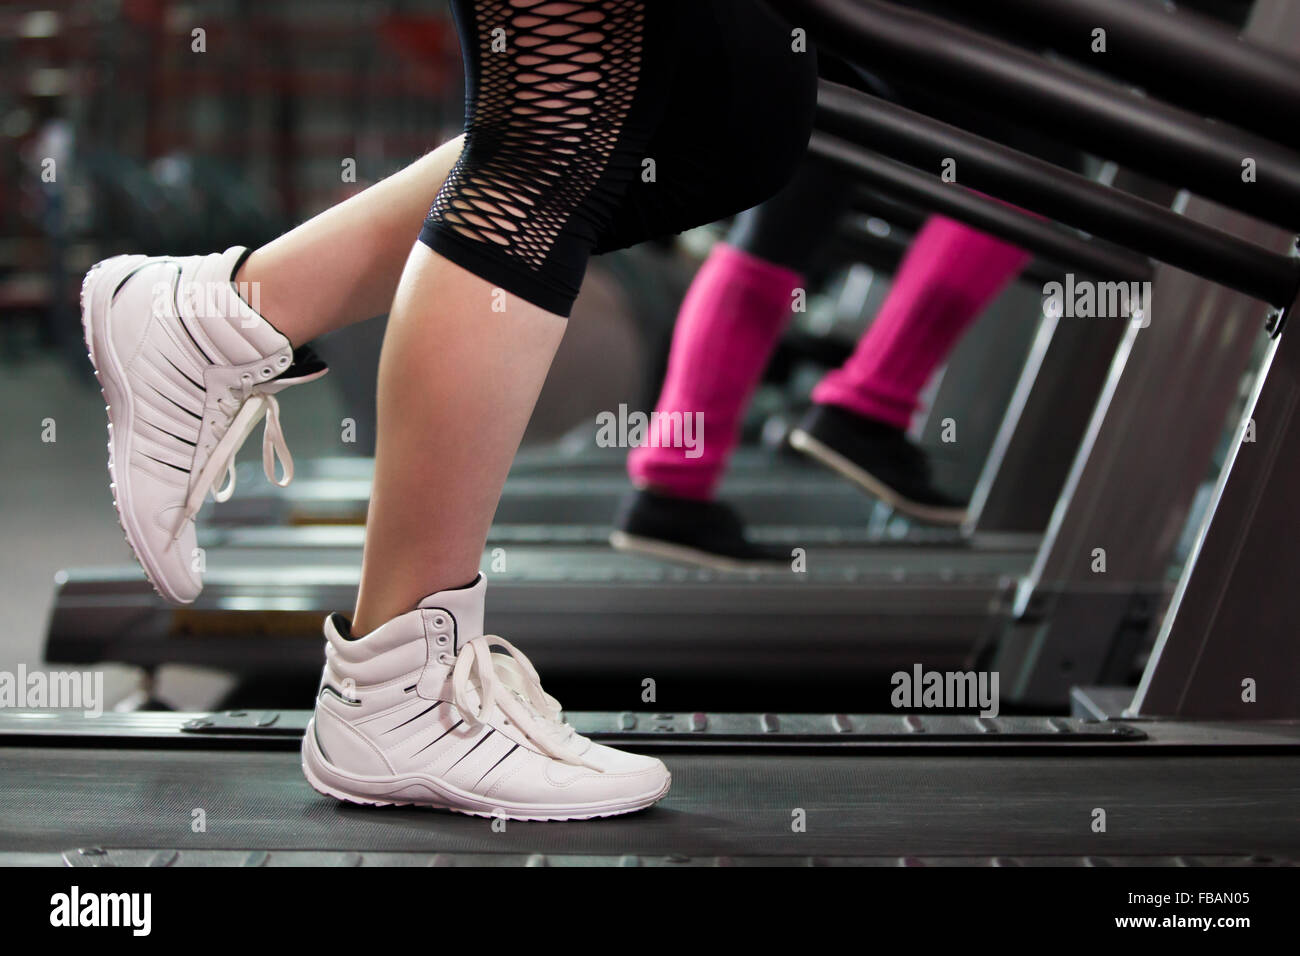 Close-up of women legs dans sneakers sur tapis roulant dans une salle de sport Banque D'Images